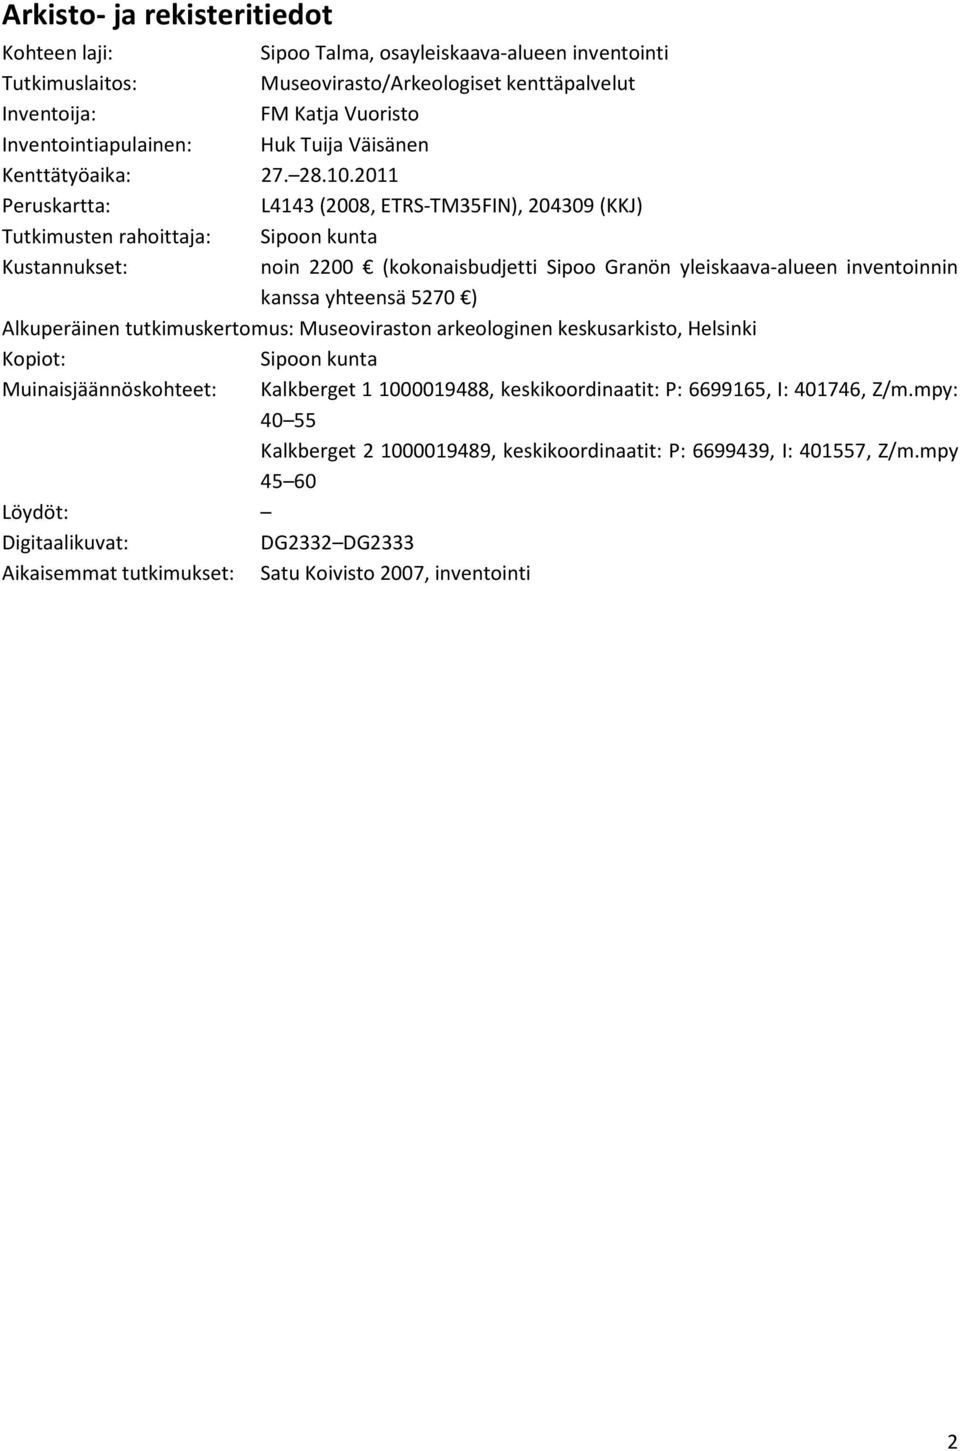 011 Peruskartta: L4143 (008, ETRS-TM35FIN), 04309 (KKJ) Tutkimusten rahoittaja: Sipoon kunta Kustannukset: noin 00 (kokonaisbudjetti Sipoo Granön yleiskaava-alueen inventoinnin kanssa yhteensä 570 )